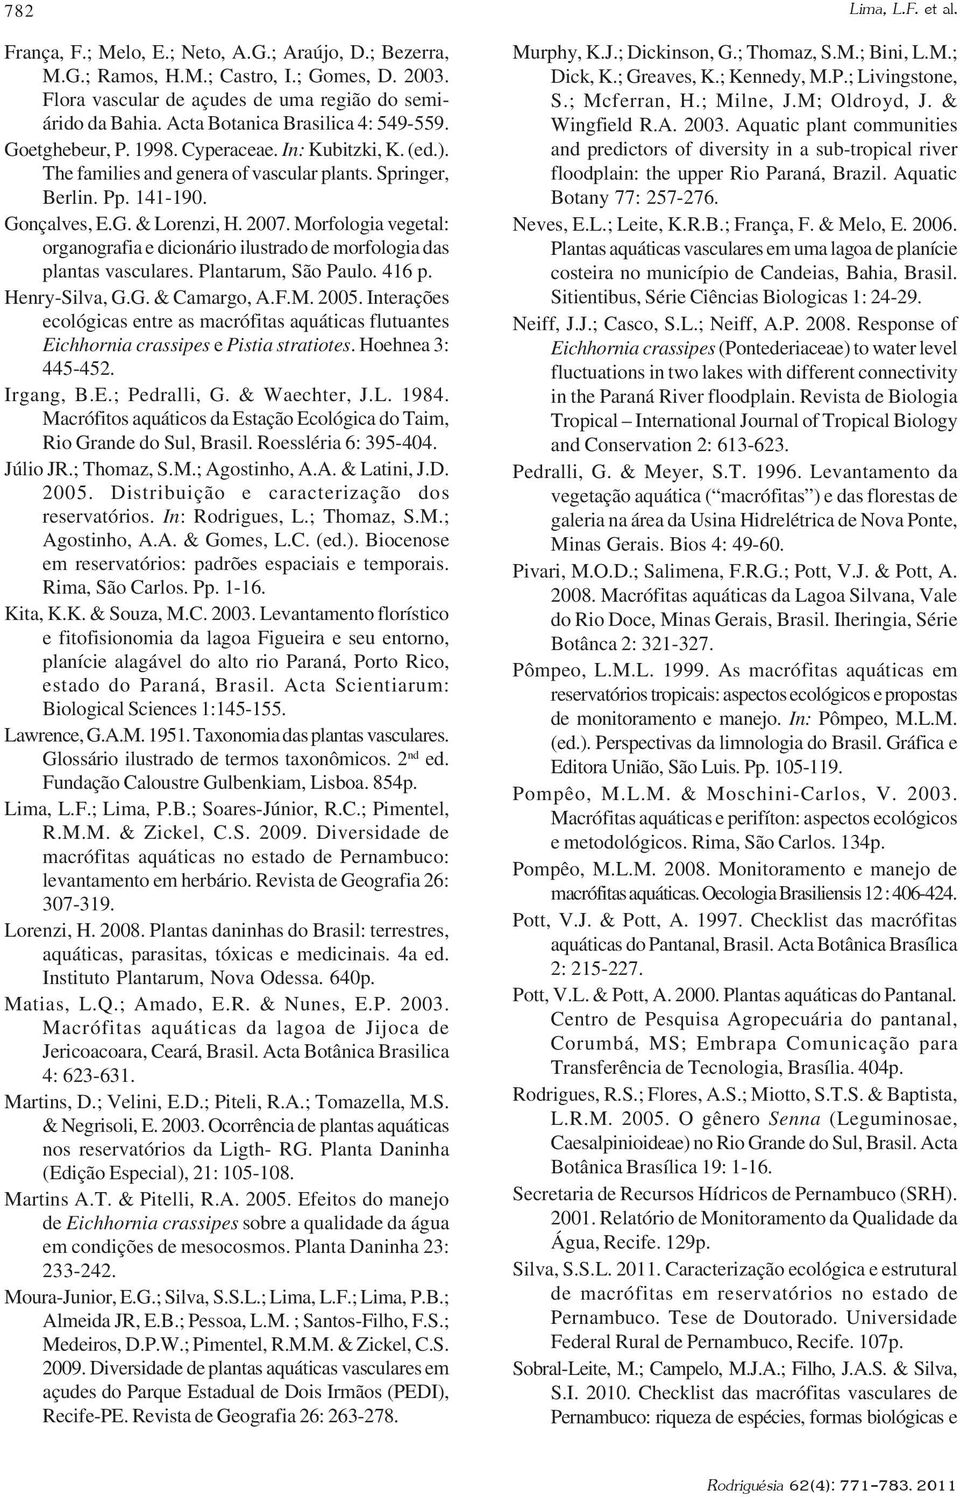 2007. Morfologia vegetal: organografia e dicionário ilustrado de morfologia das plantas vasculares. Plantarum, São Paulo. 416 p. Henry-Silva, G.G. & Camargo, A.F.M. 2005.